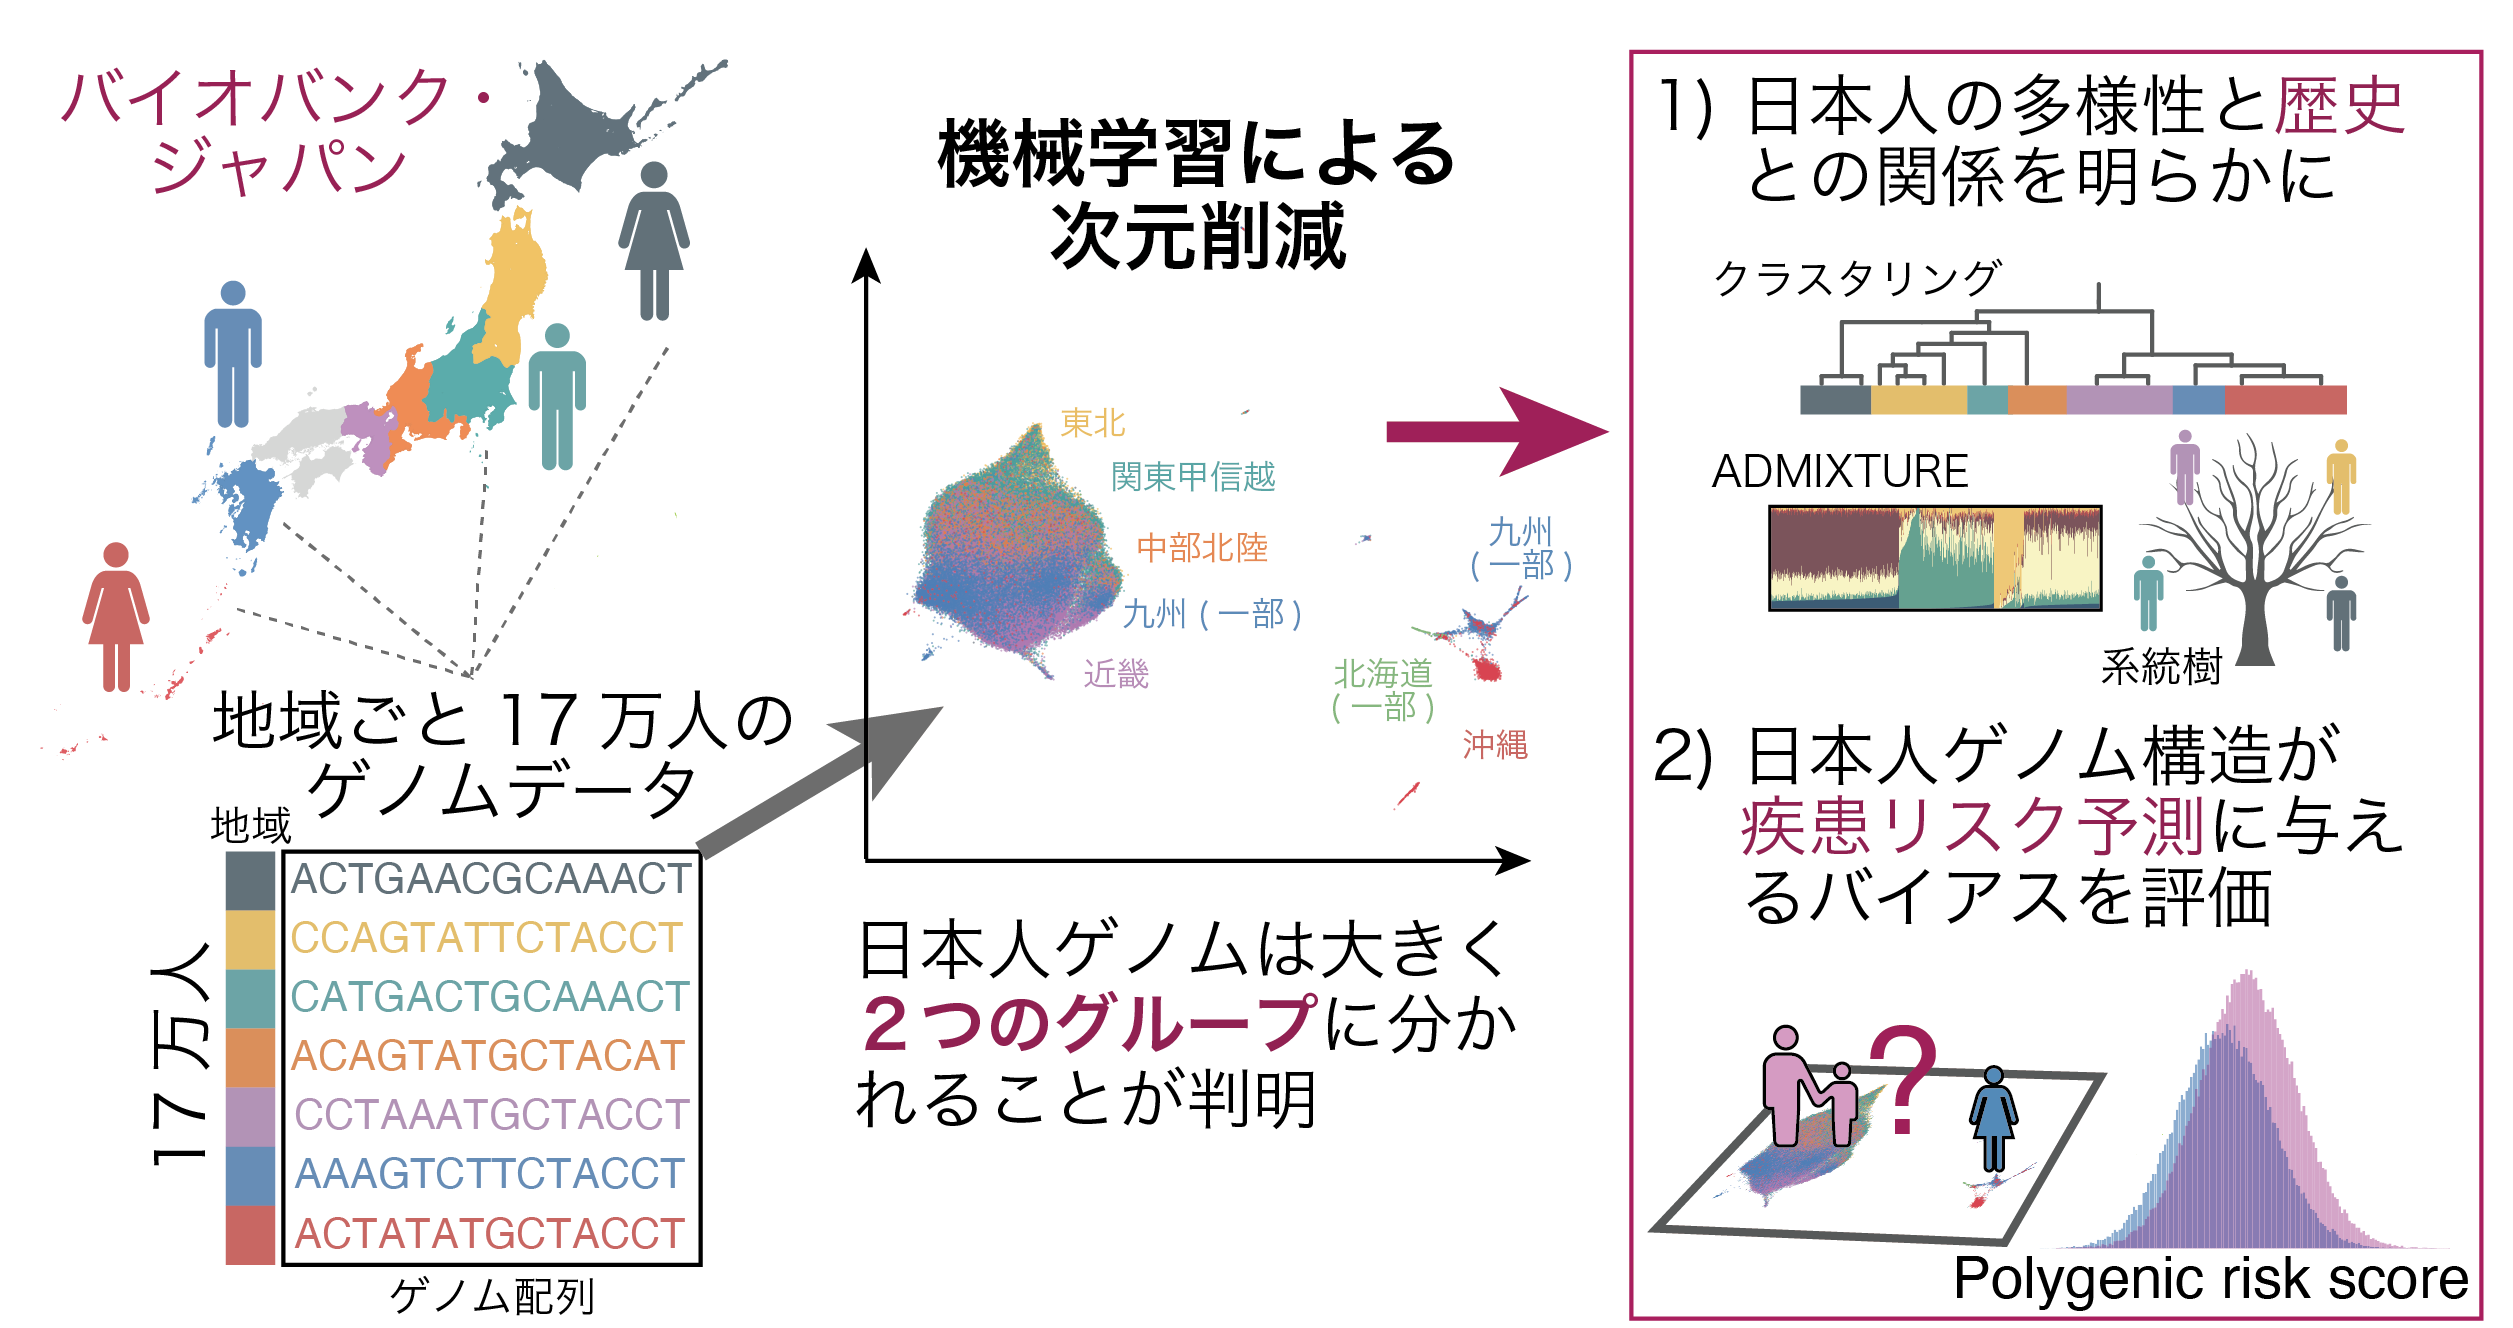 日本人集団17万人のゲノムデータに機械学習・次元削減手法を適用し、詳細なゲノム多様性を明らかに